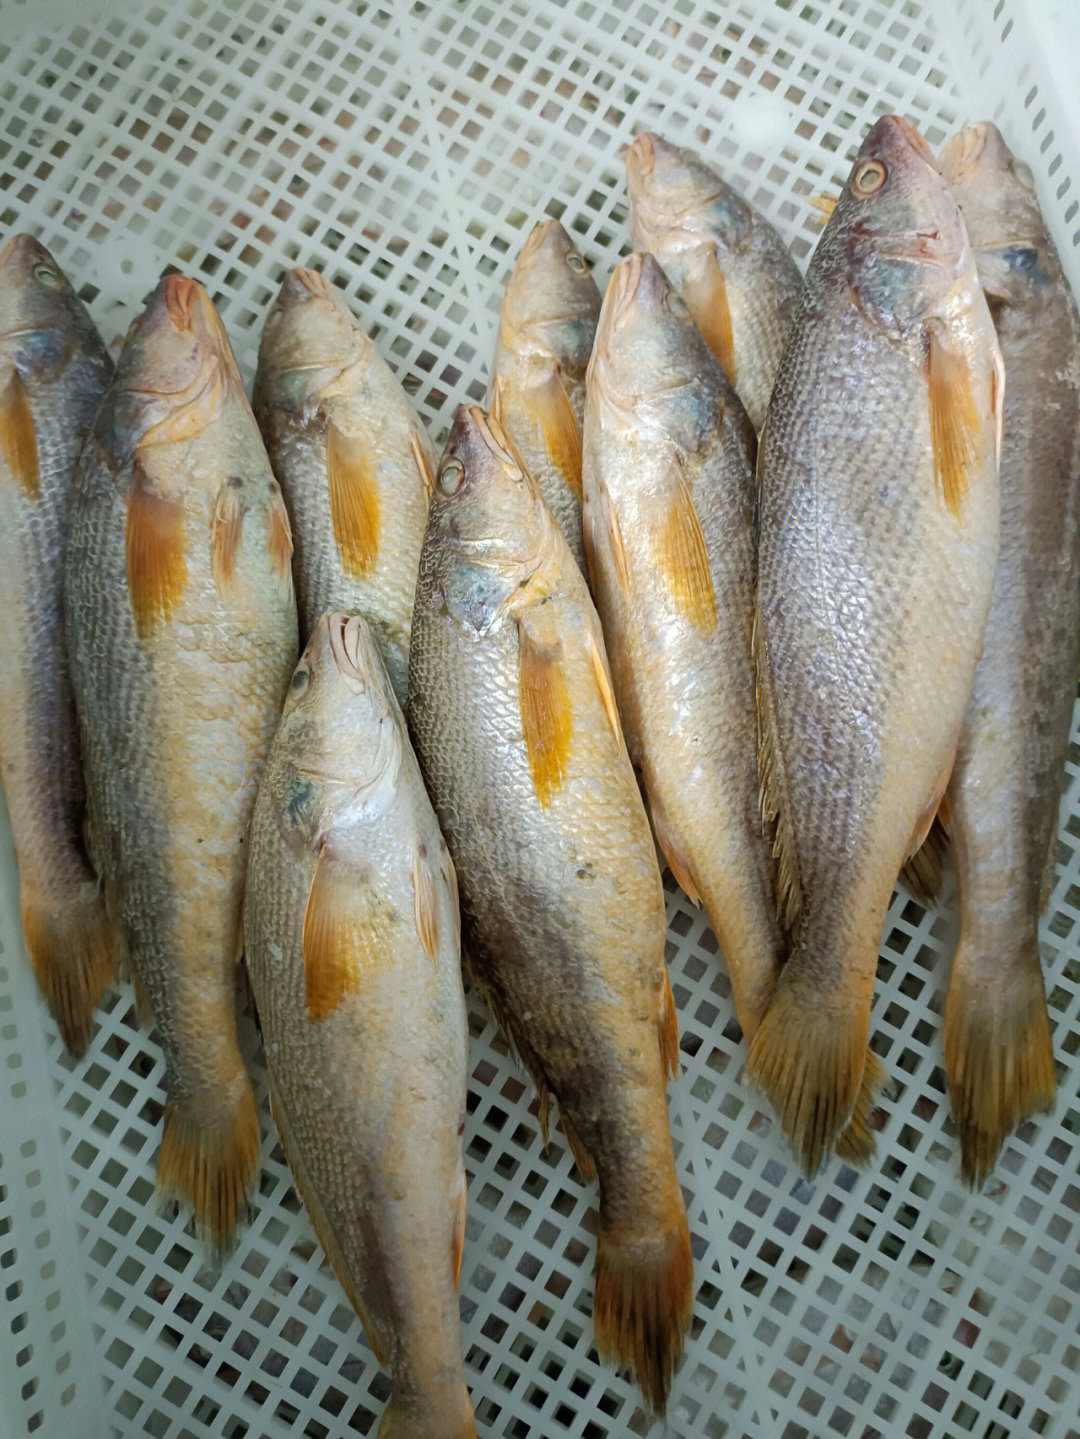 印尼黄姑鱼图片